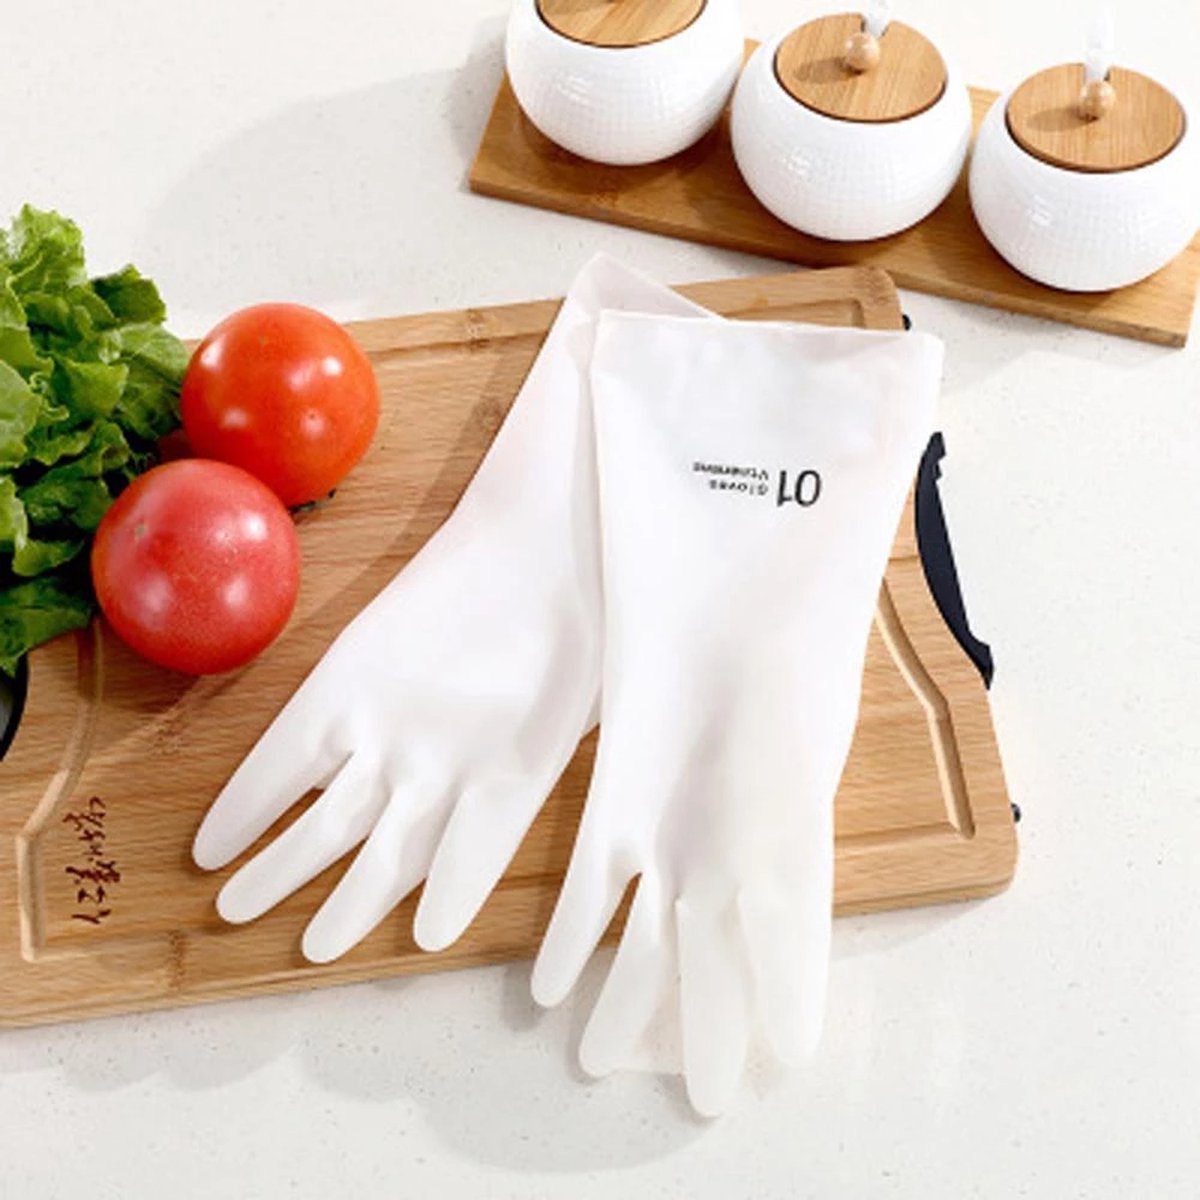 Gants de nettoyage en caoutchouc pour cuisine - 3 paires - Imperméables et  réutilisables. S